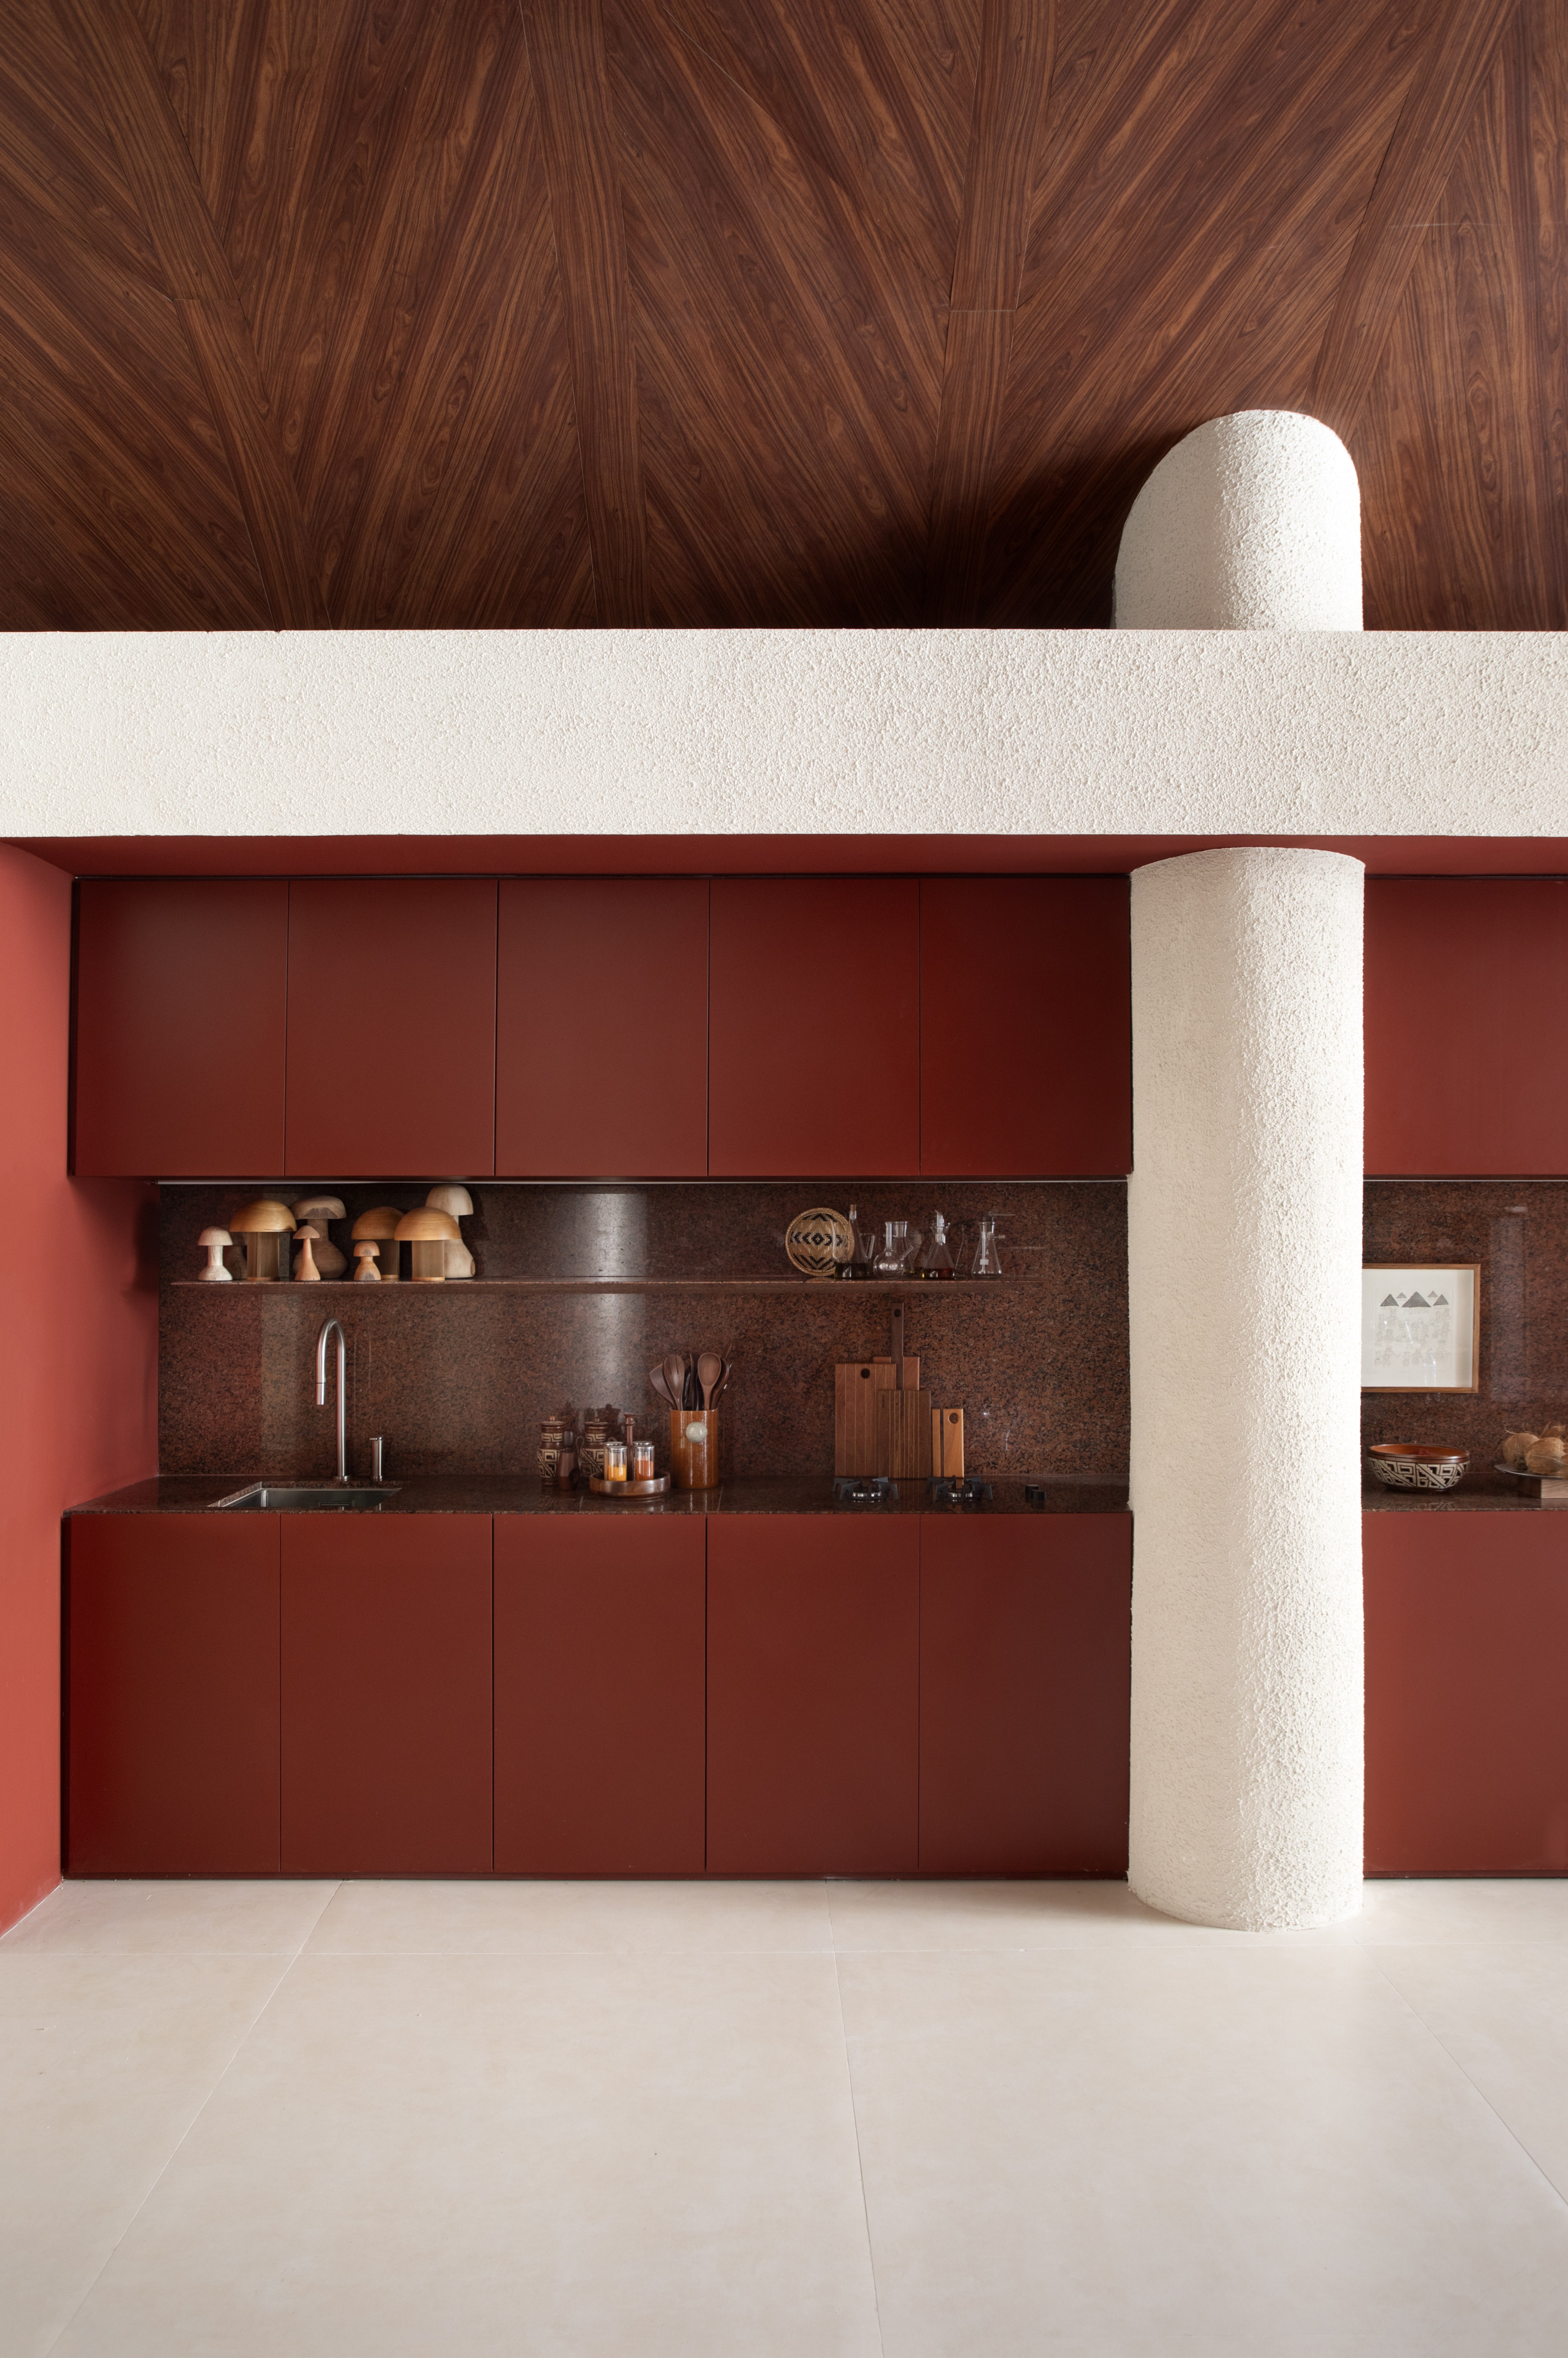 CASACOR SP: Ambiente tem banheiro em estilo cápsula de inox. Projeto de SALA2 Arquitetura. Na foto, cozinha em vermelho vibrante e coluna em branco